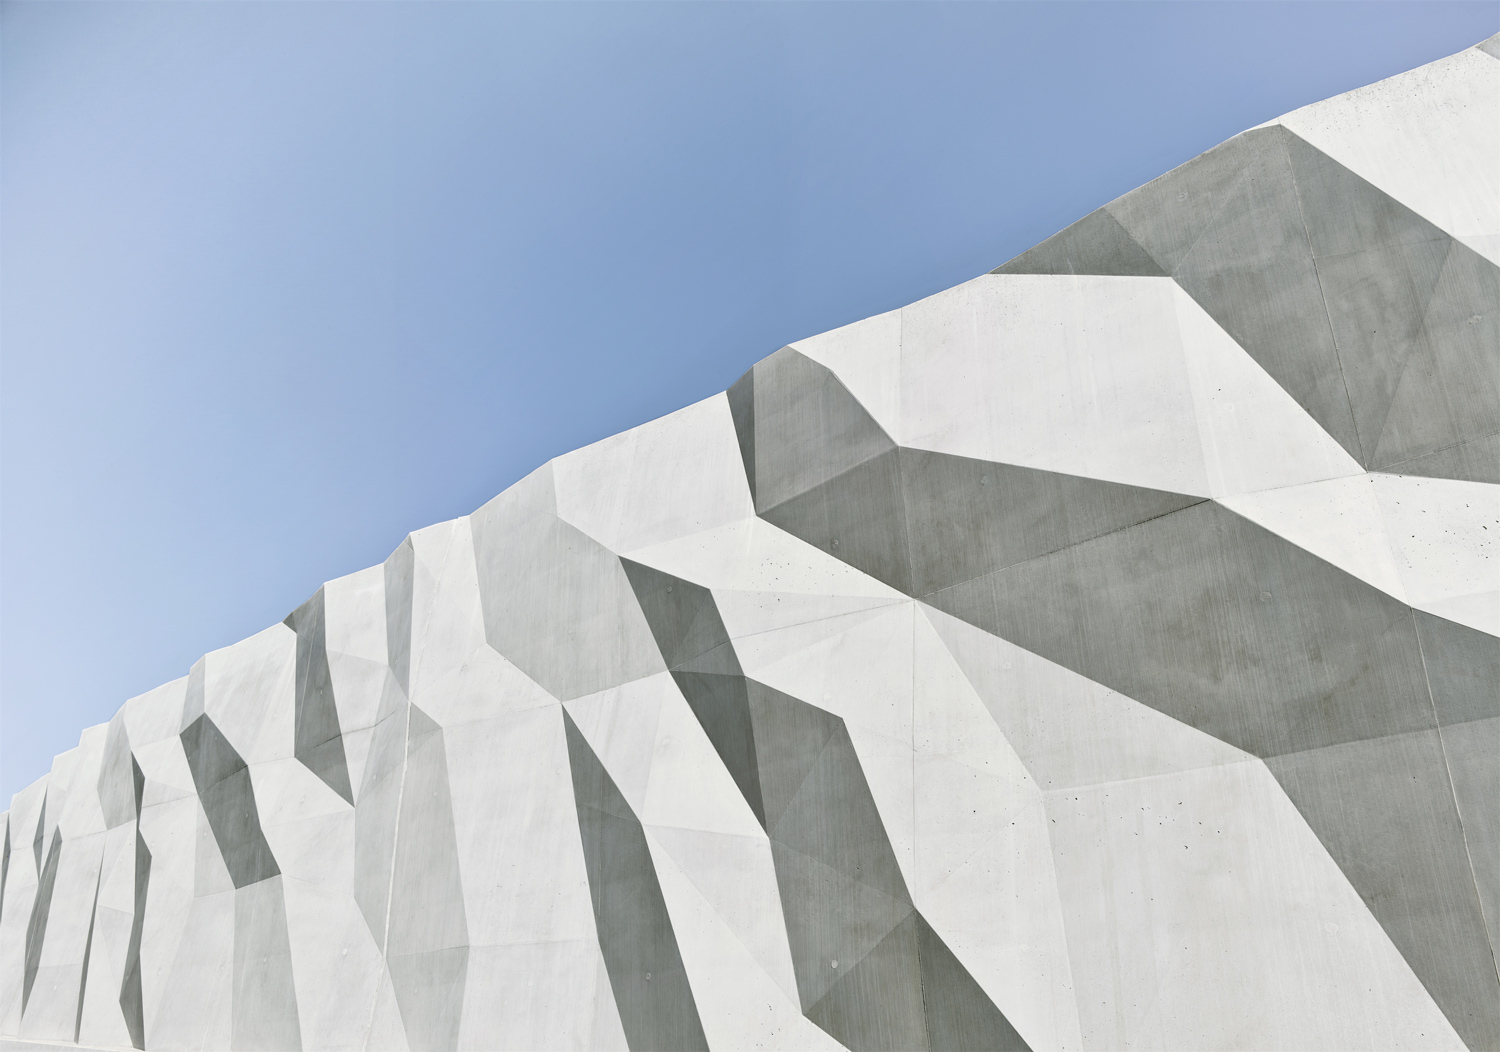 Mur de soutènement - architecture & génie civil - Suisse